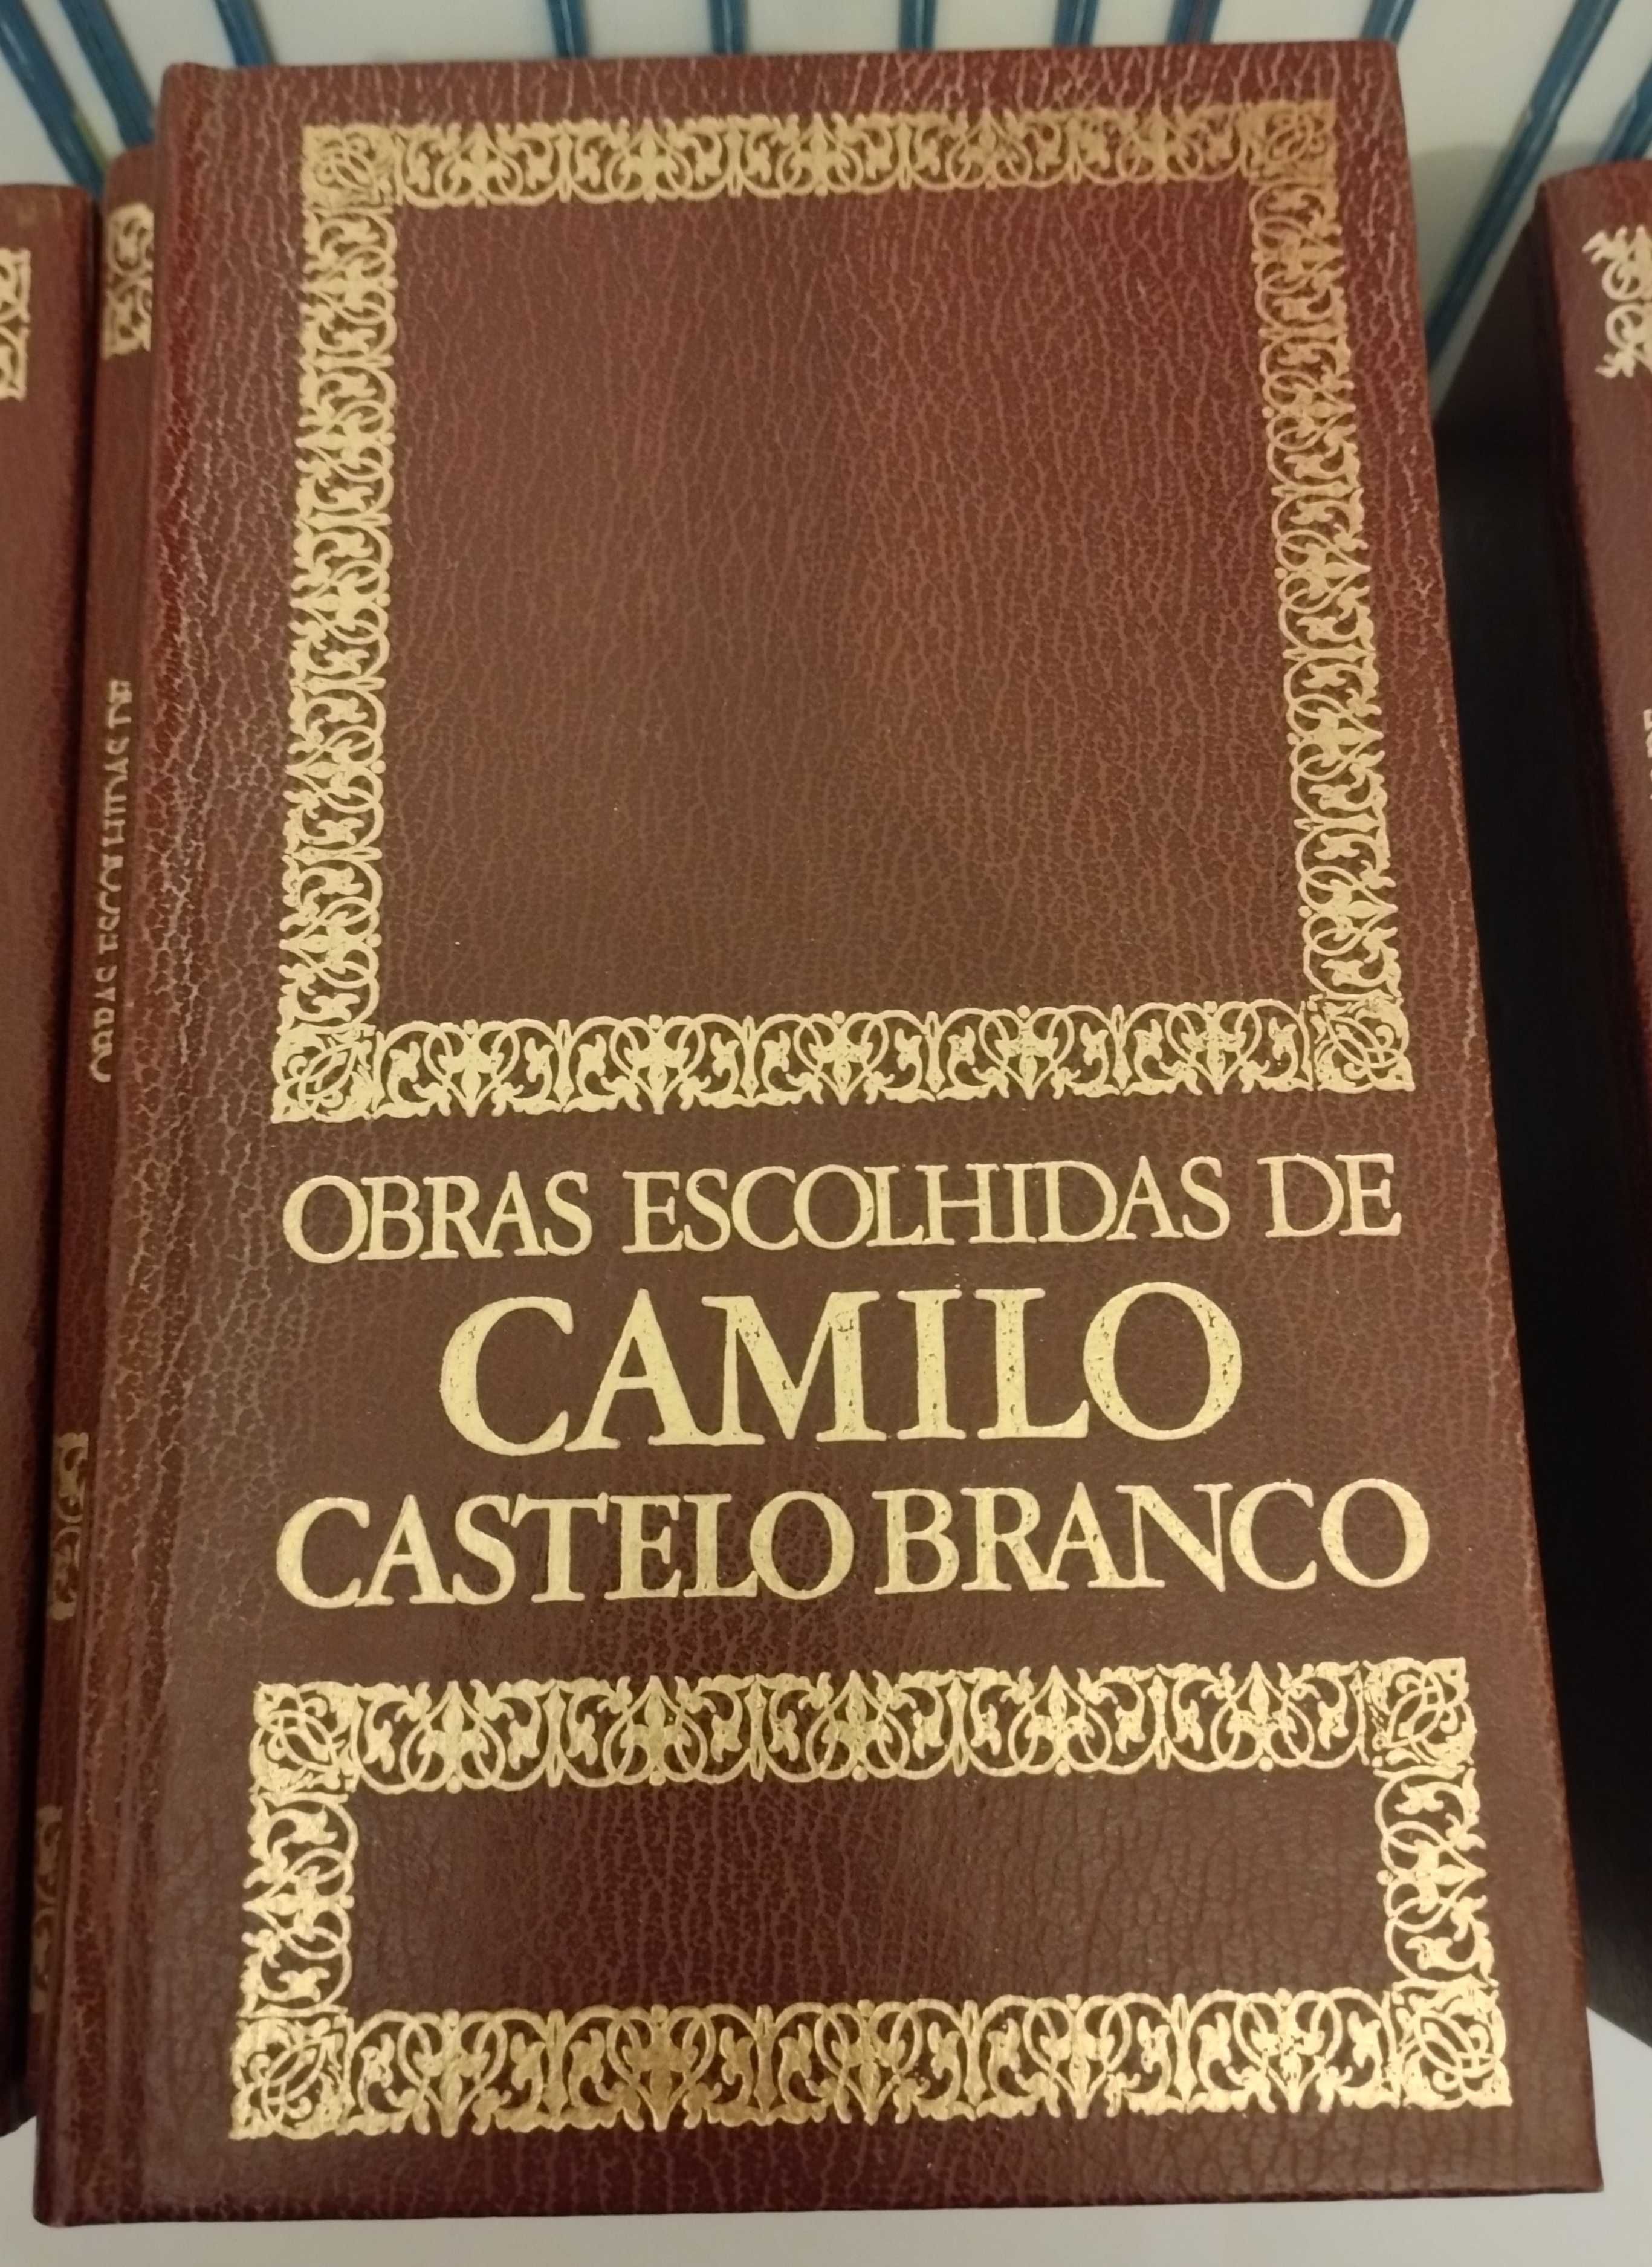 Obras Escolhidas de Camilo Castelo Branco (24 volumes - total 30€)